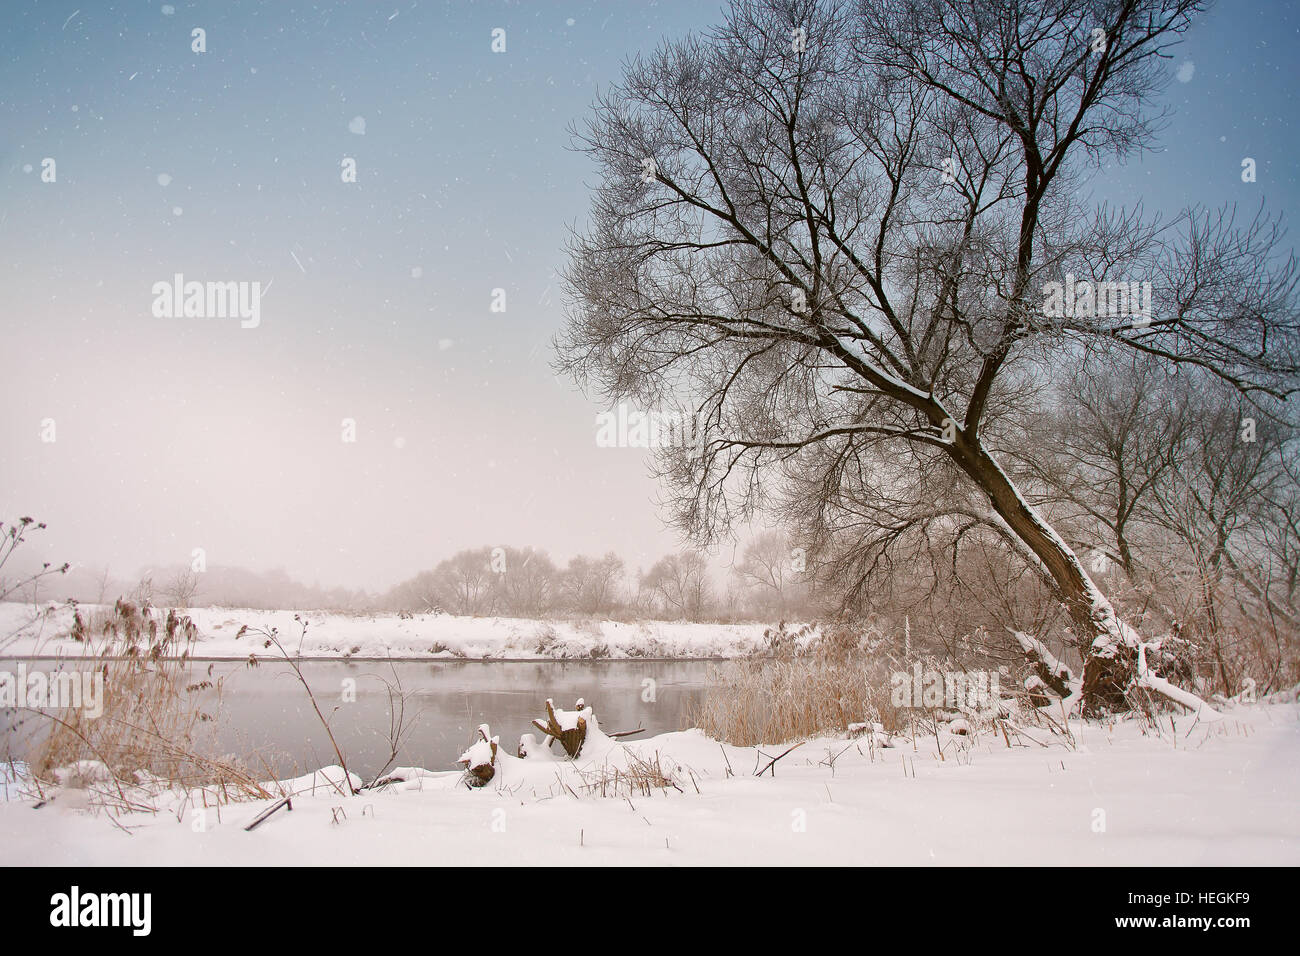 Neige sur la rivière. Misty d'hiver nuageux temps de neige. Canne à sucre et de l'herbe sous la neige et le gel sur la berge. Banque D'Images